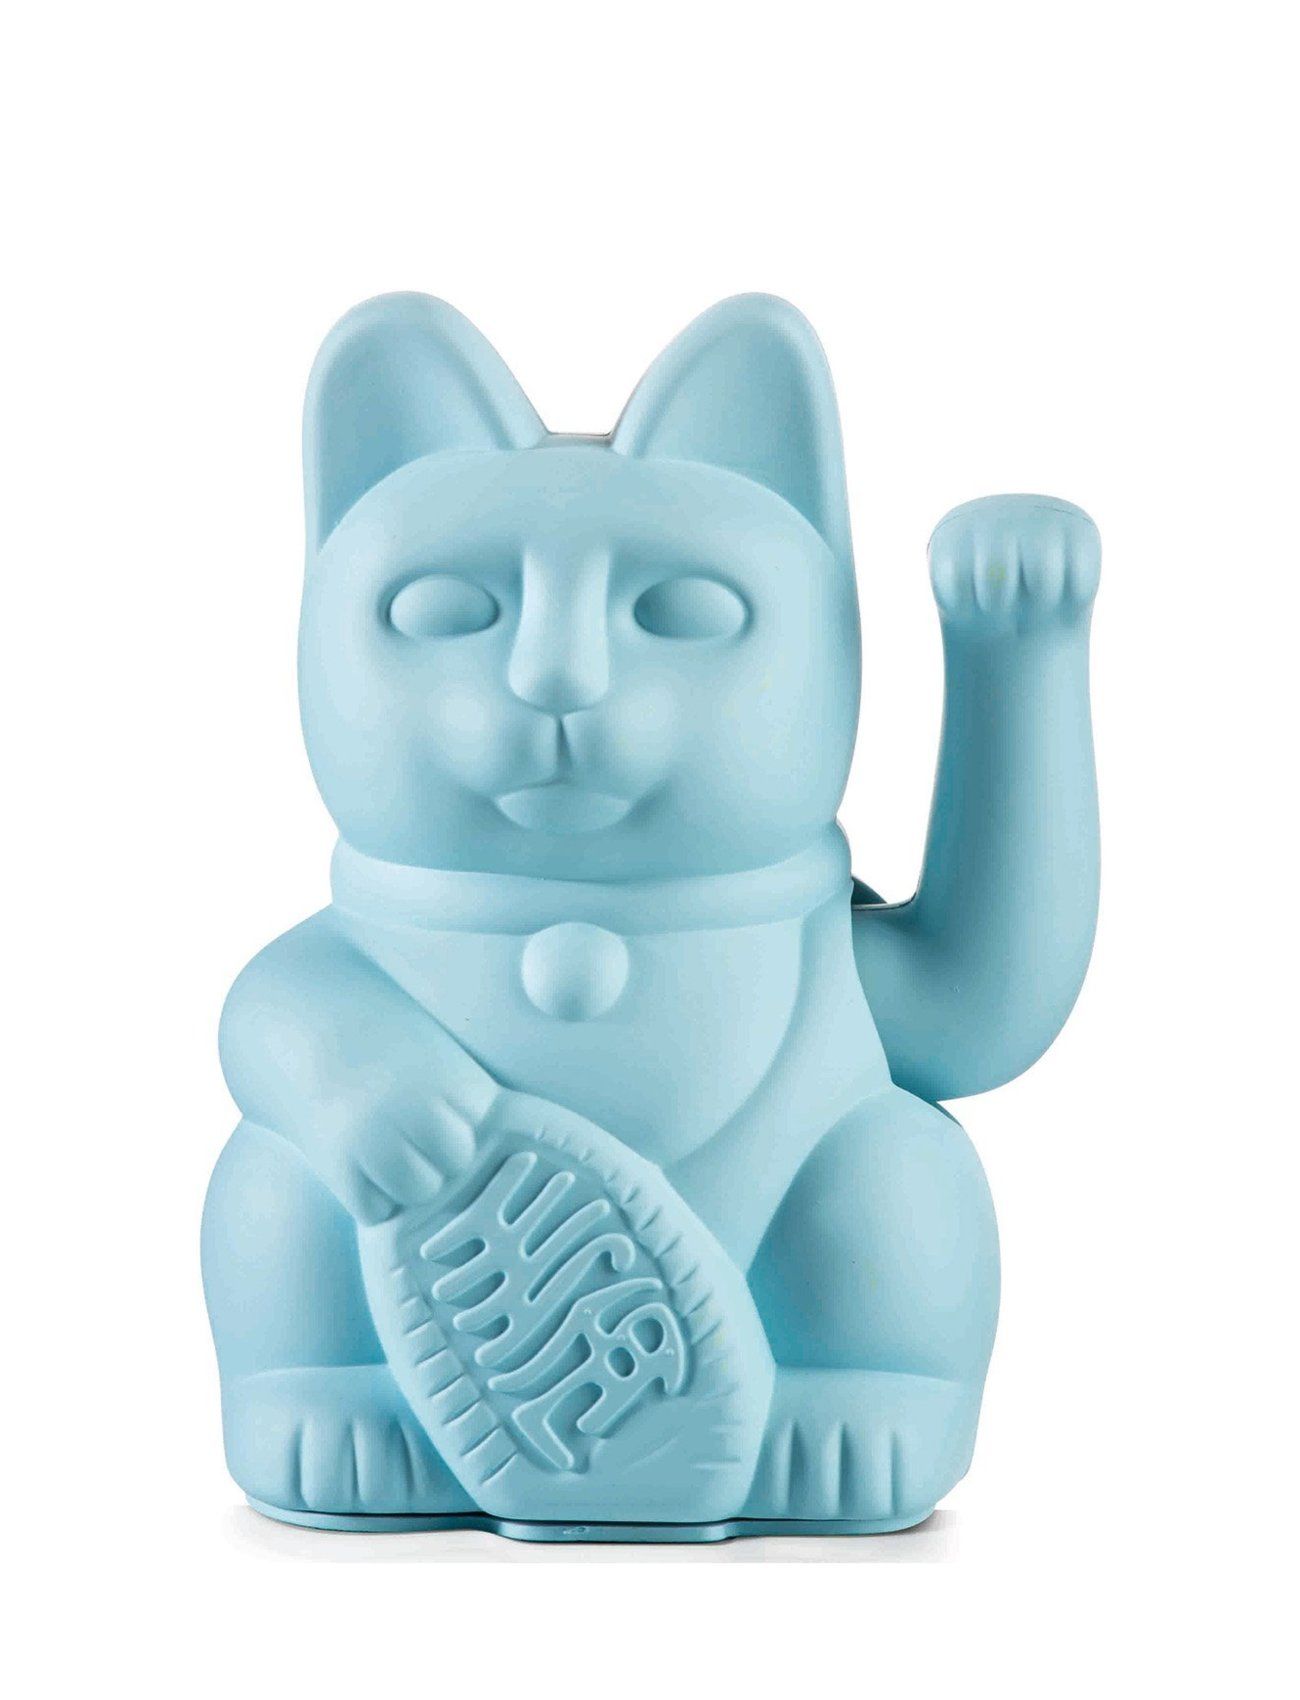 Maneki-Neko - Lucky Cat Home Decoration Decorative Accessories-details Porcelain Figures & Sculptures Blue Donkey